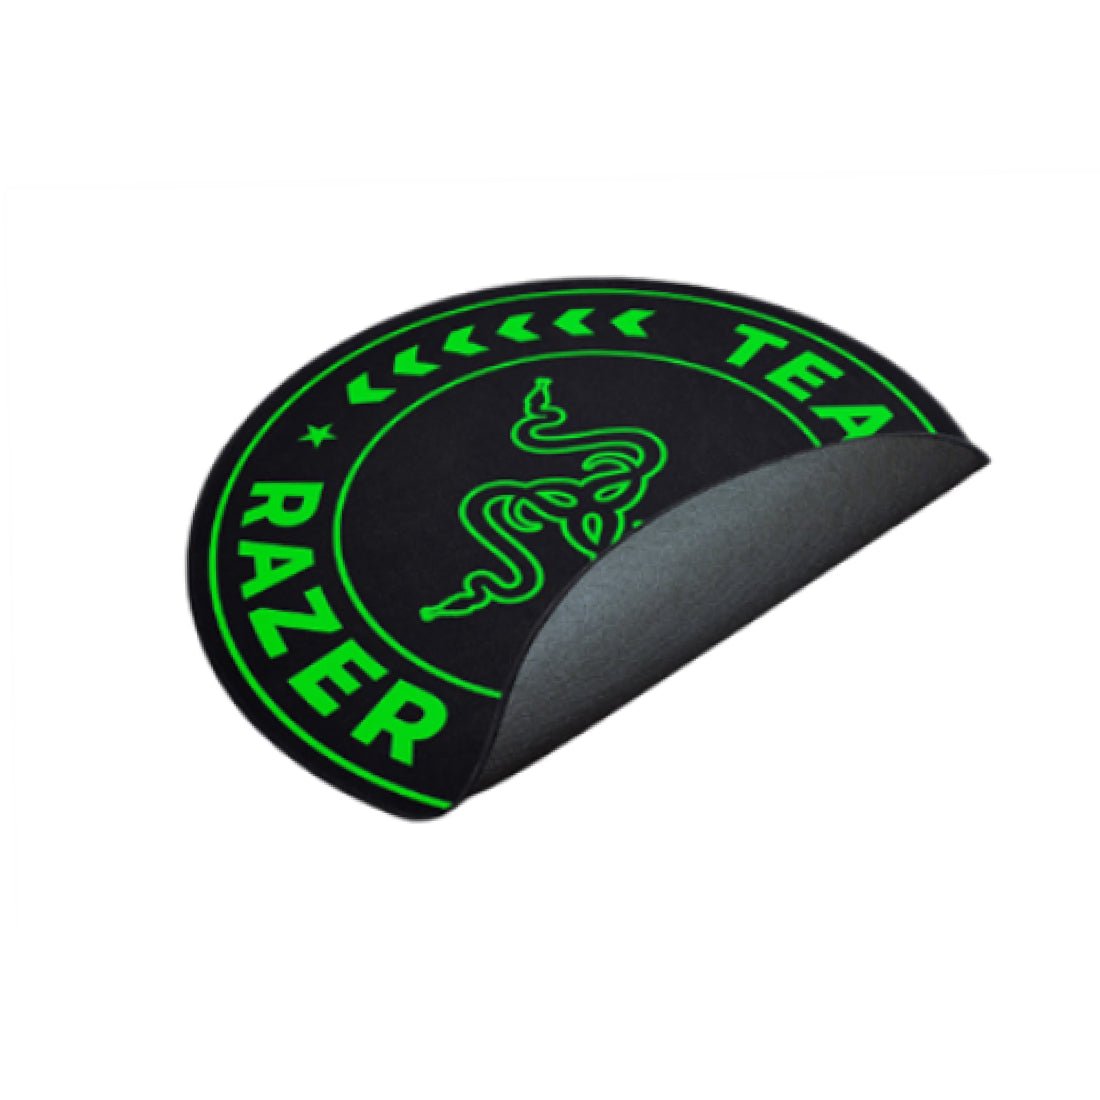 Razer Team Razer Floor Rug - Black & Green - حصير - Store 974 | ستور ٩٧٤